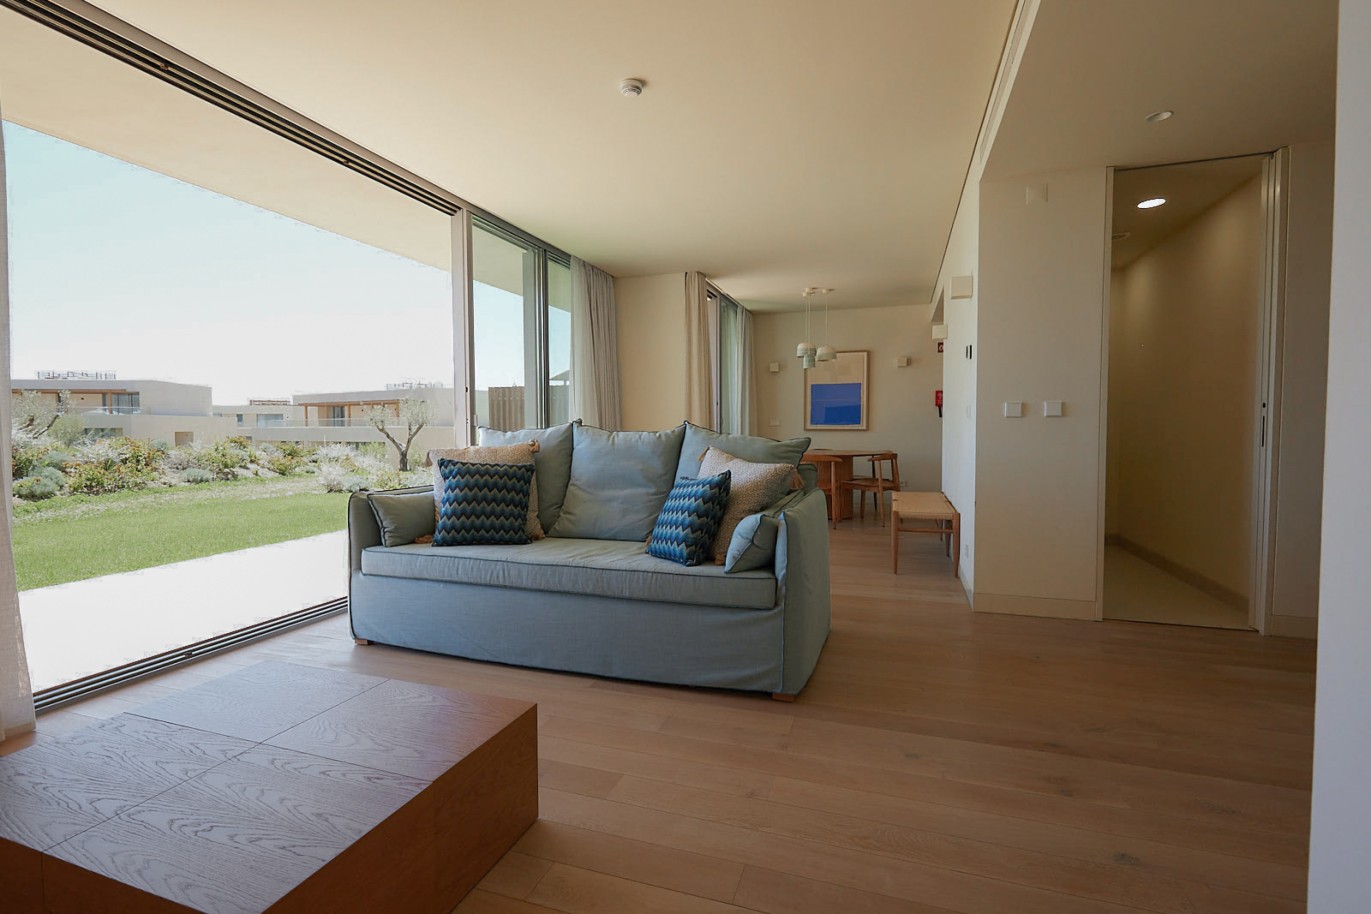 Piso de 2 dormitorios en complejo, en venta en Porches, Algarve_230563